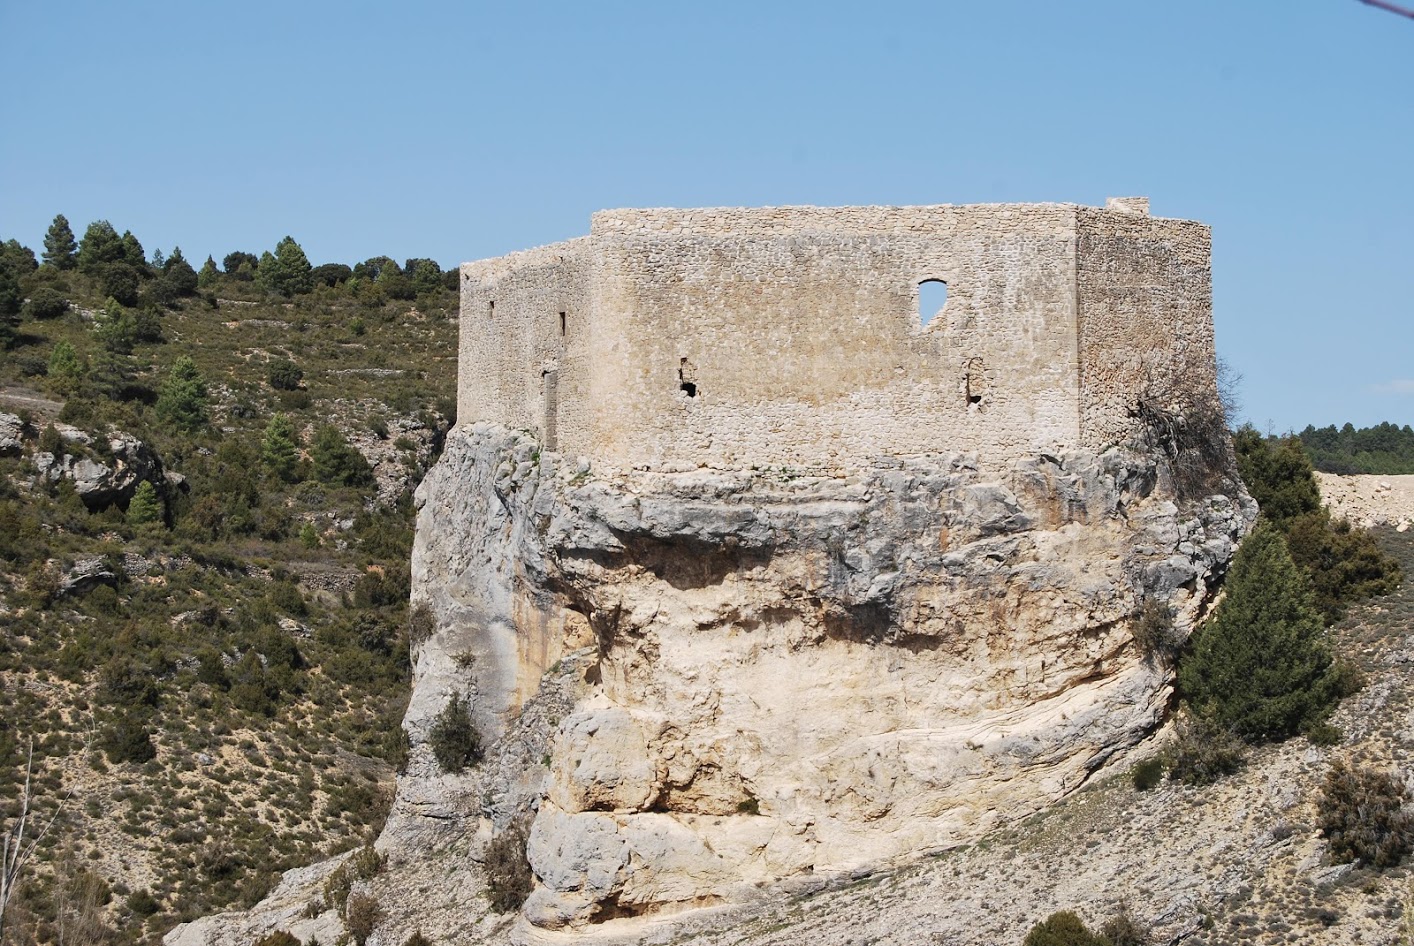 Arbeteta Castle